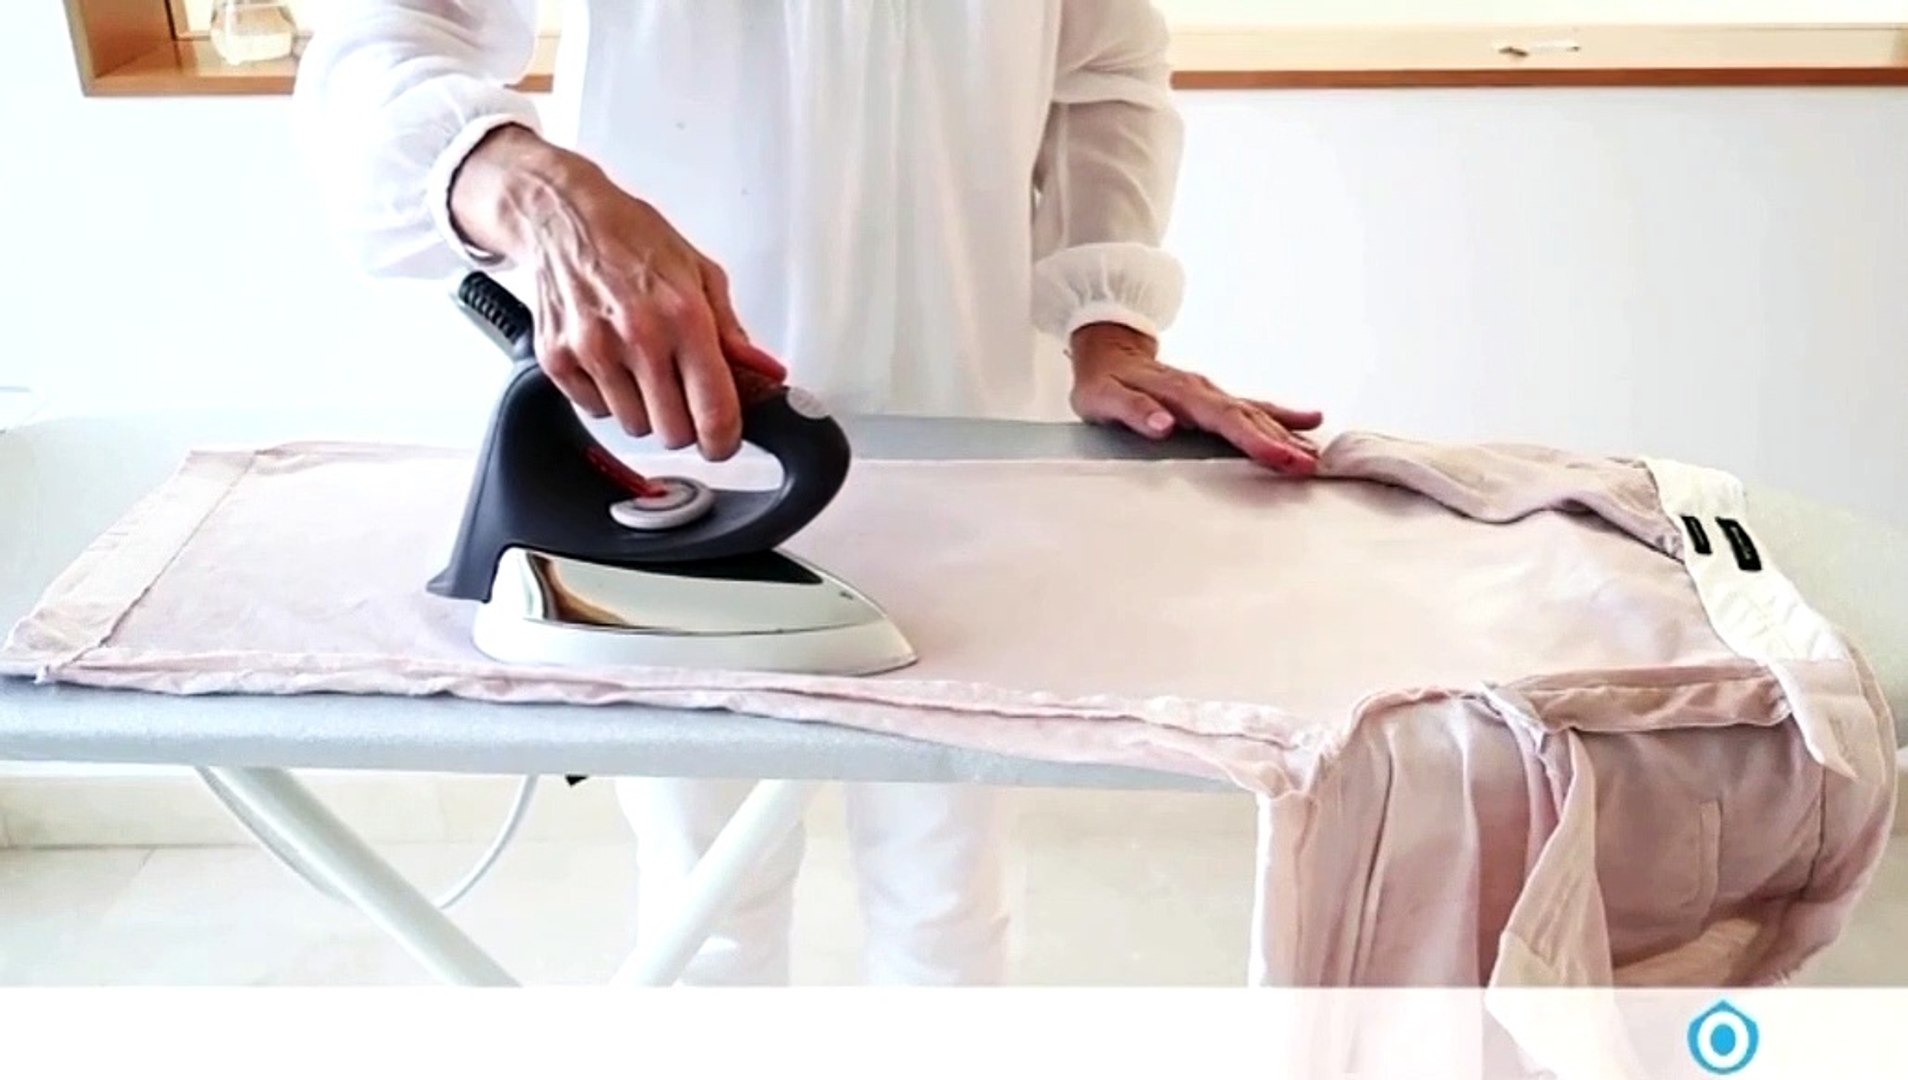 Cómo planchar pantalón de lino con la experta en orden y limpieza @PiaOrganiza - Dailymotion